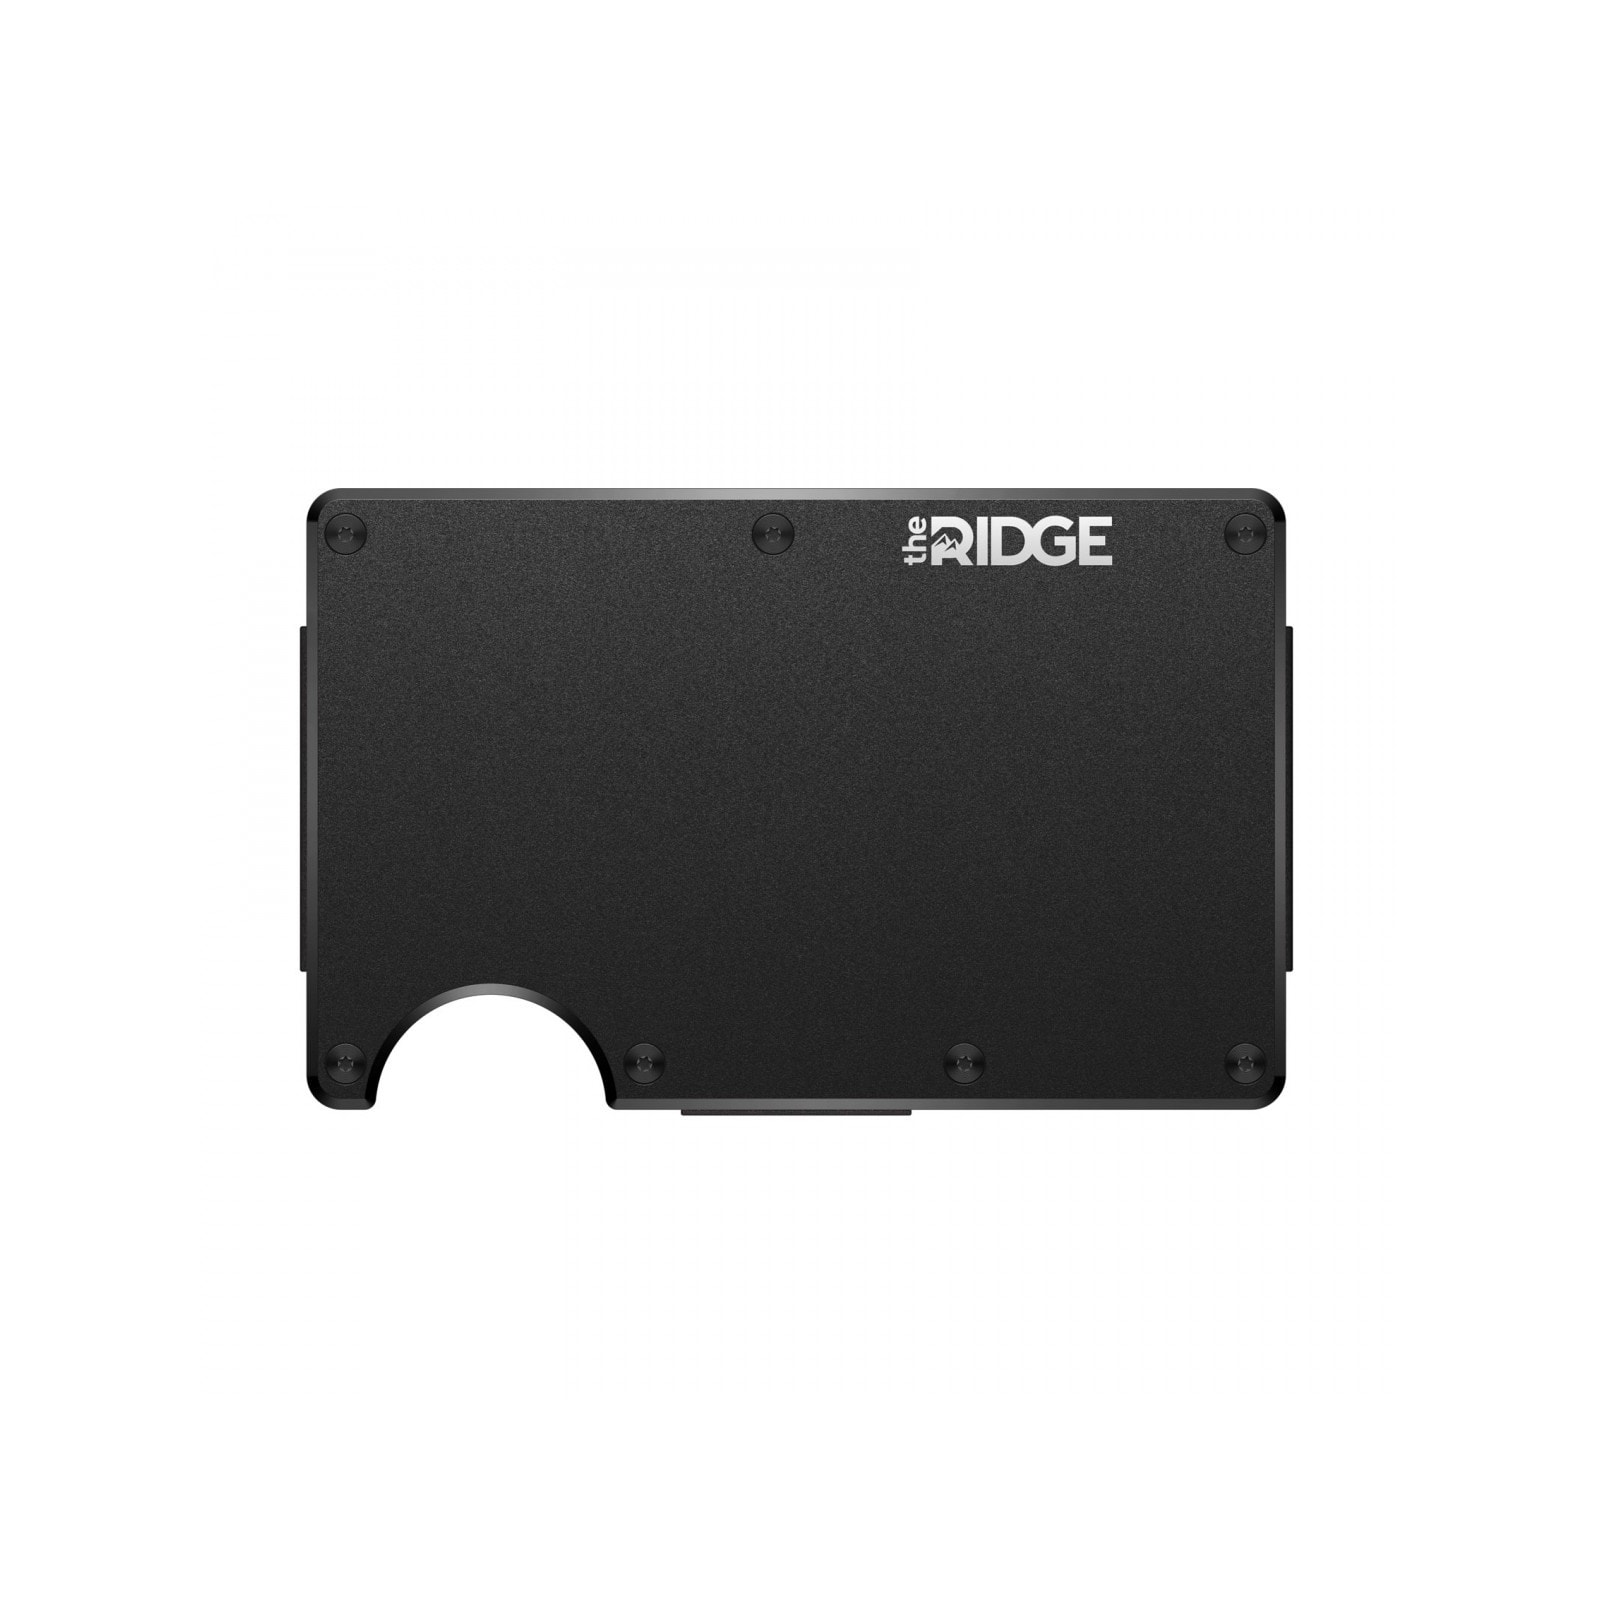 RIDGE WALLET 알루미늄 RFID 카드지갑